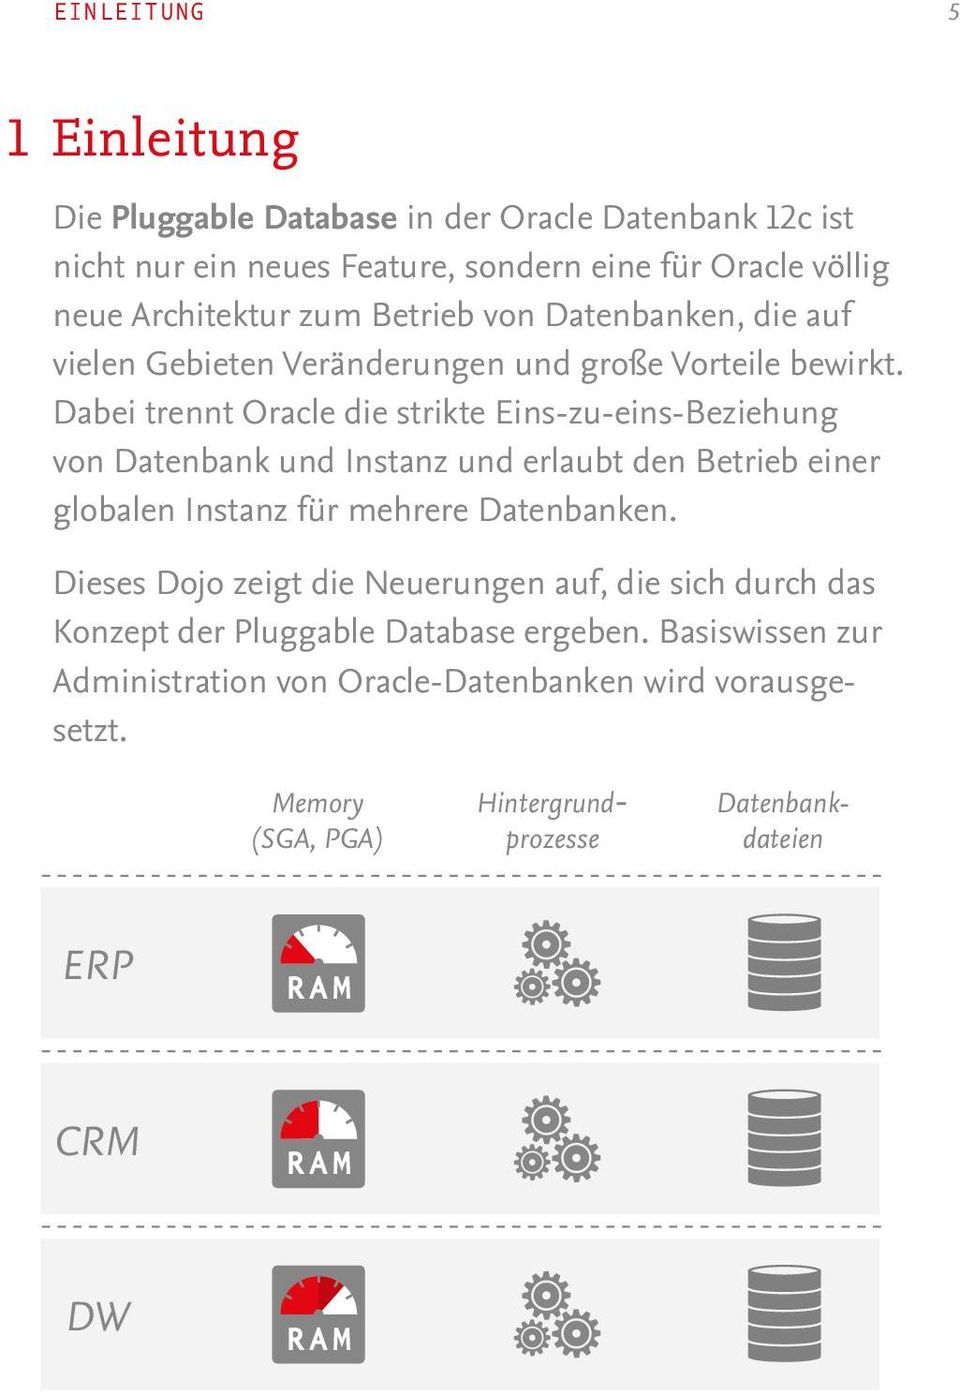 Dabei trennt Oracle die strikte Eins-zu-eins-Beziehung von Datenbank und Instanz und erlaubt den Betrieb einer globalen Instanz für mehrere Datenbanken.